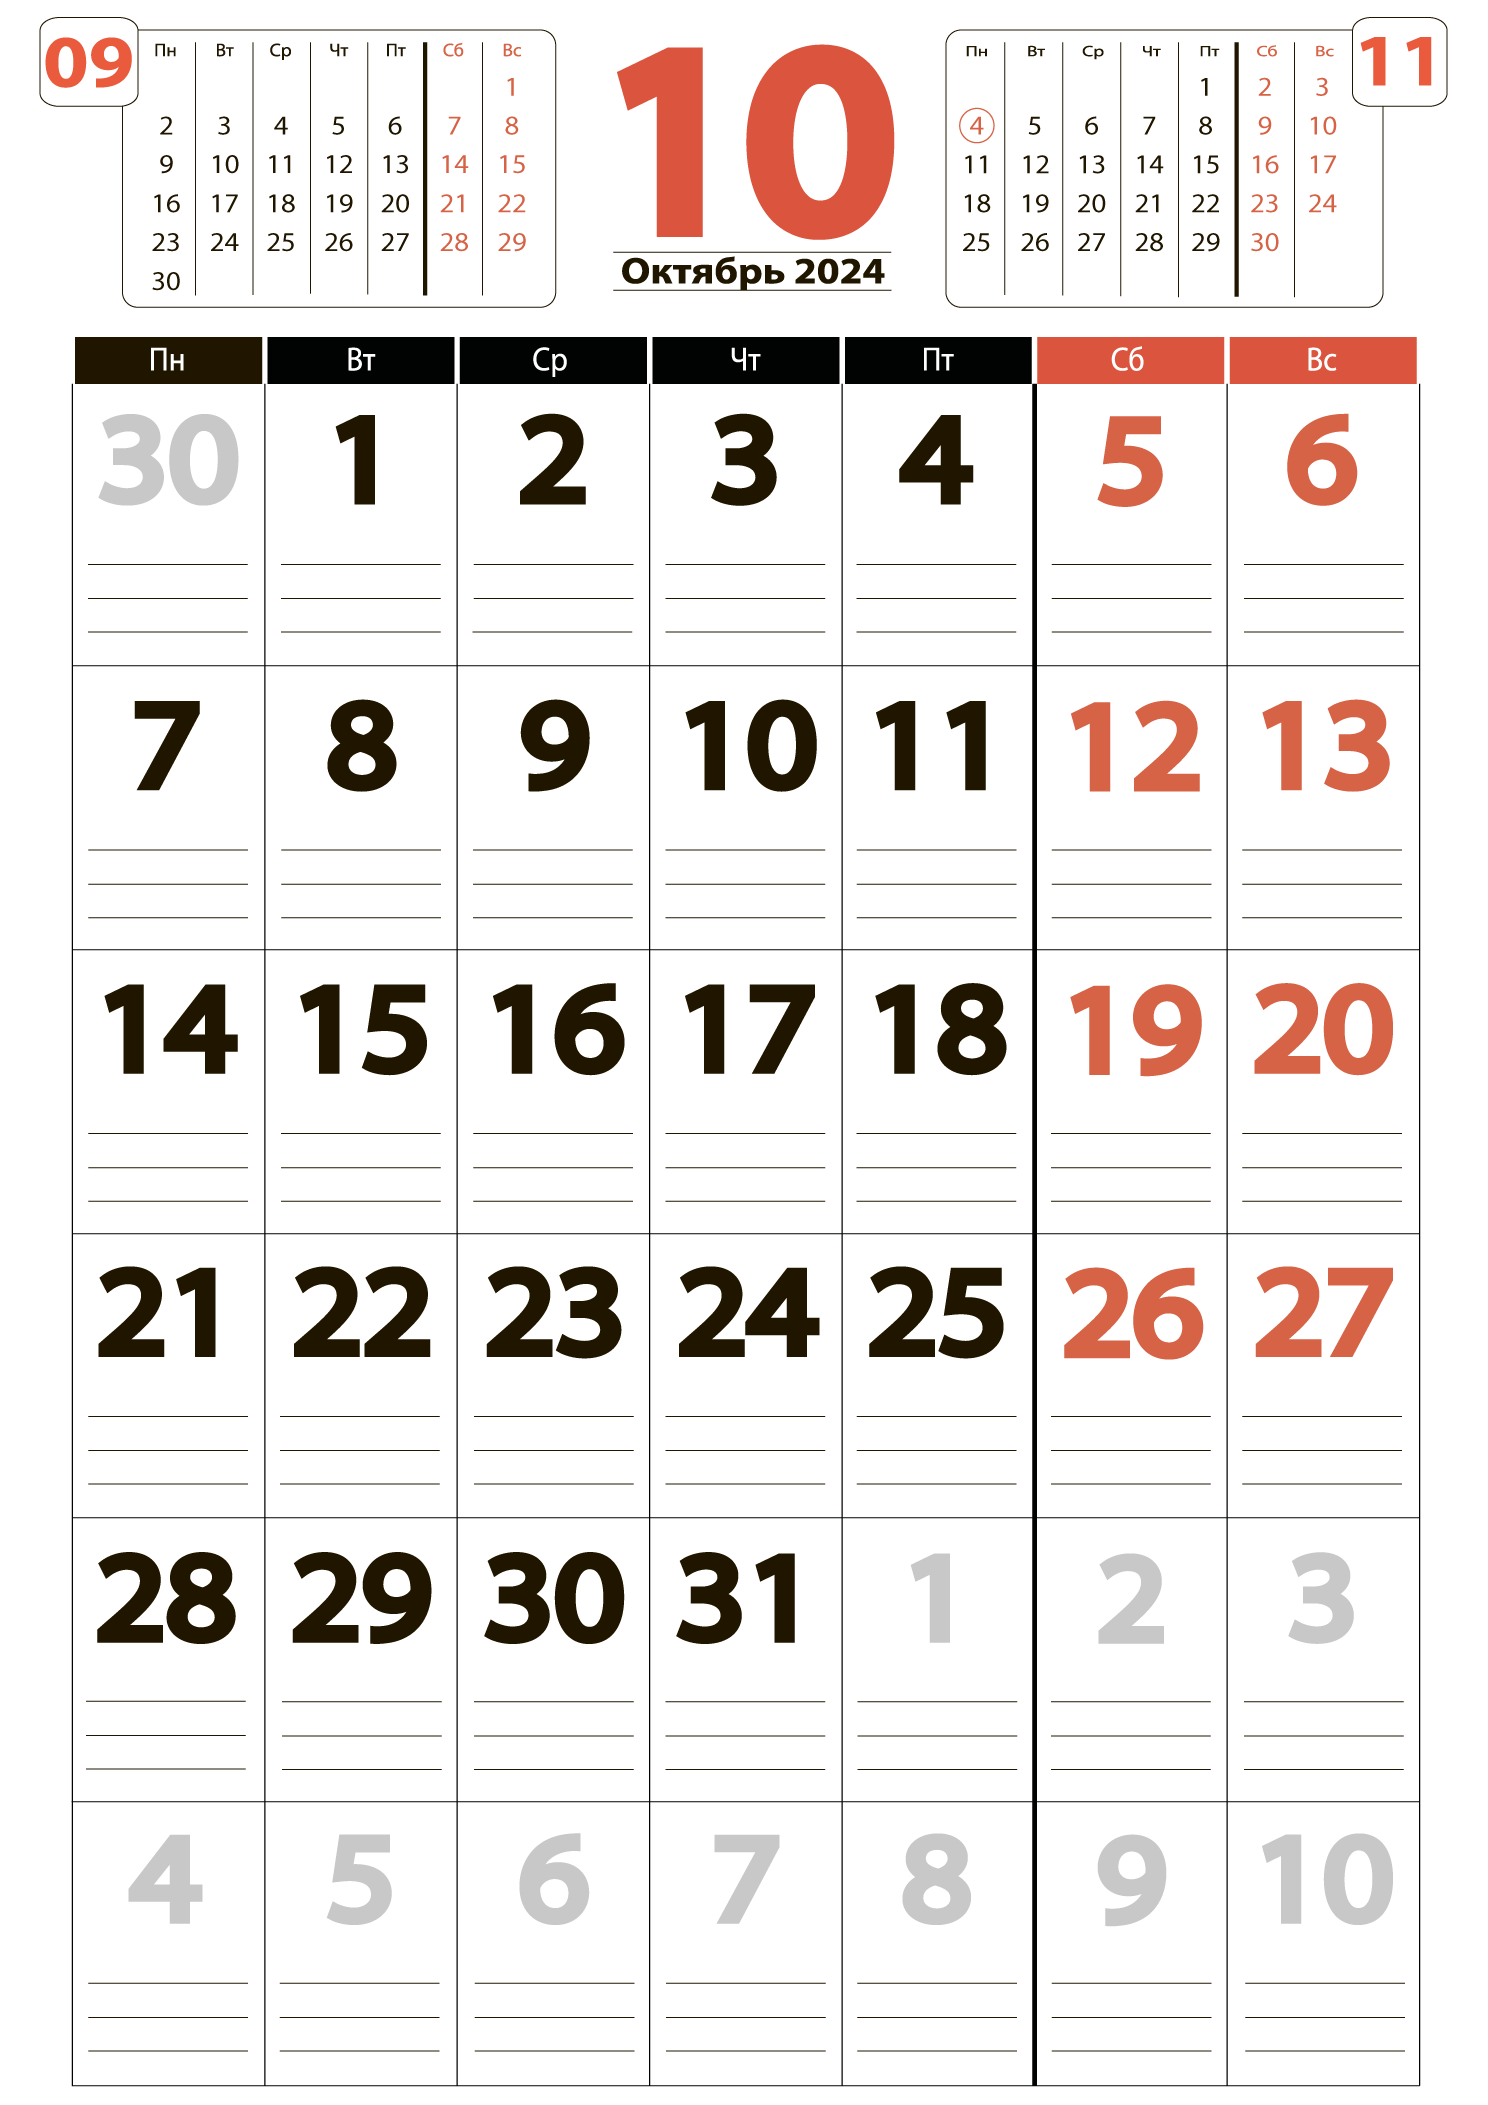 Печать крупного календаря на октябрь 2024